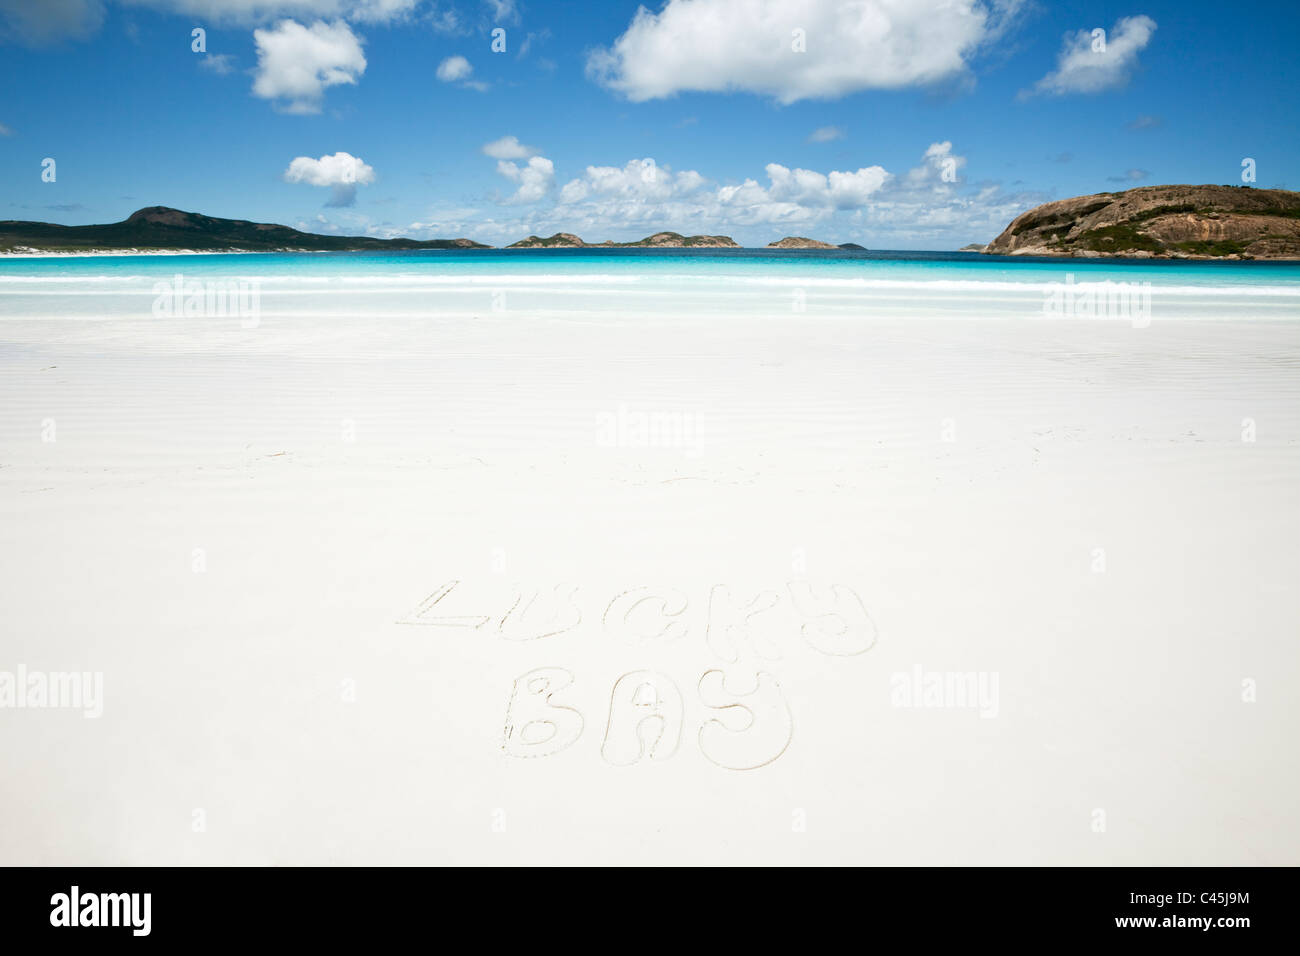 La sabbia bianca e le acque cristalline della Baia di fortuna. Cape Le Grand National Park, Esperance, Australia occidentale, Australia Foto Stock